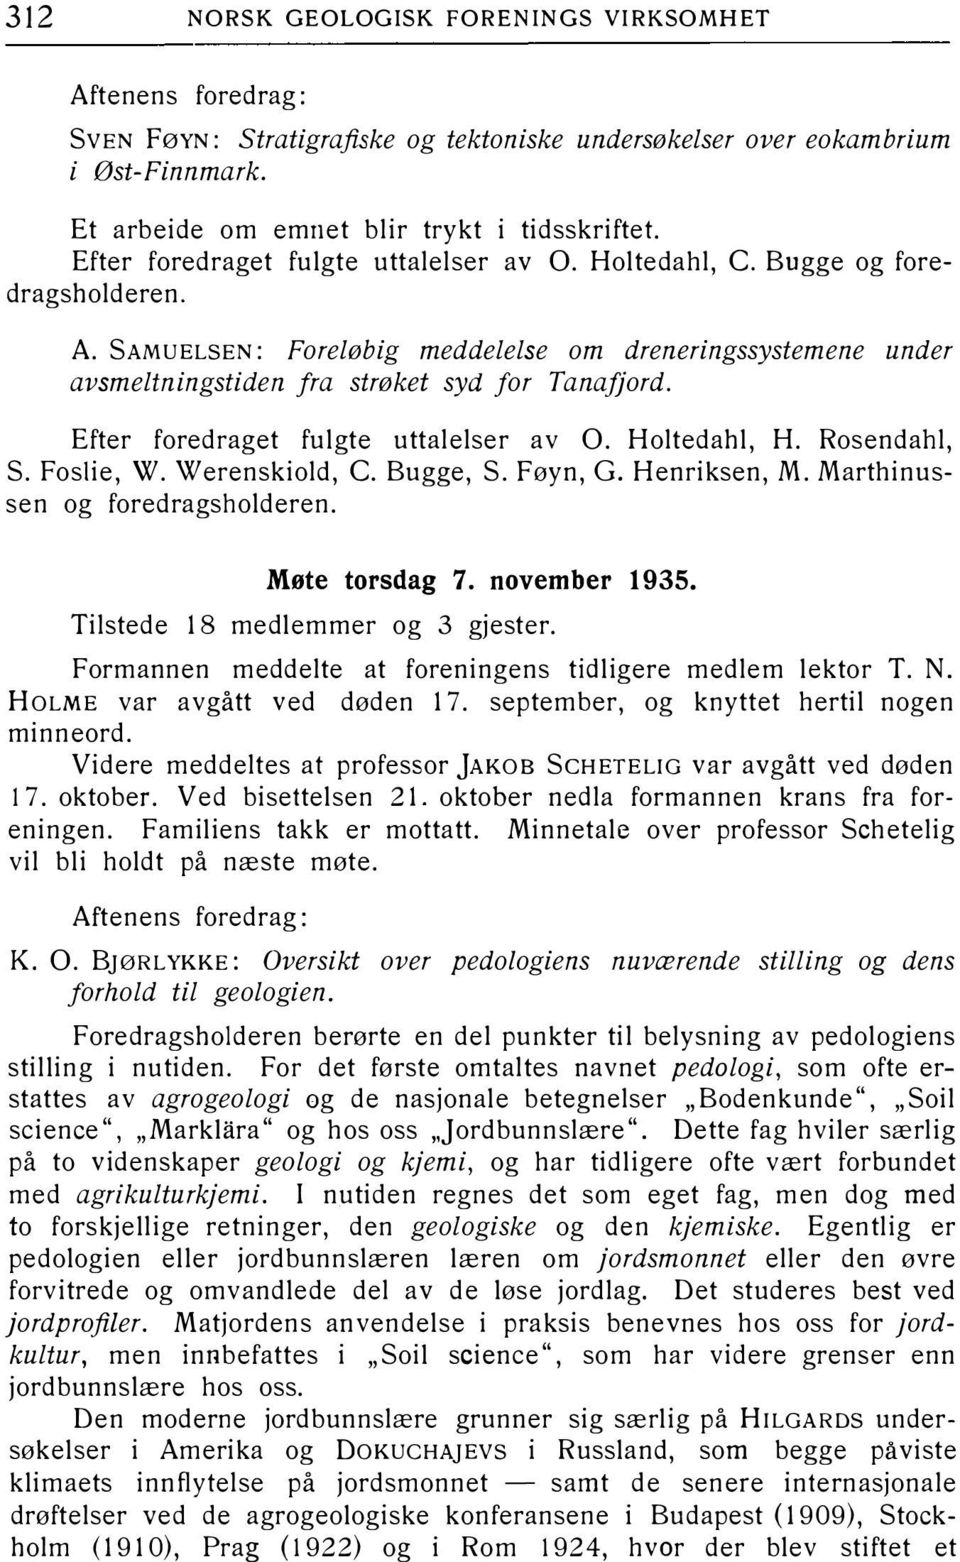 Efter foredraget fulgte uttalelser av O. Holtedahl, H. Rosendahl, S. Foslie, W. Werenskiold, C. Bugge, S. Føyn, G. Henriksen, M. Marthinussen og foredragsholderen. Møte torsdag 7. november 1935.